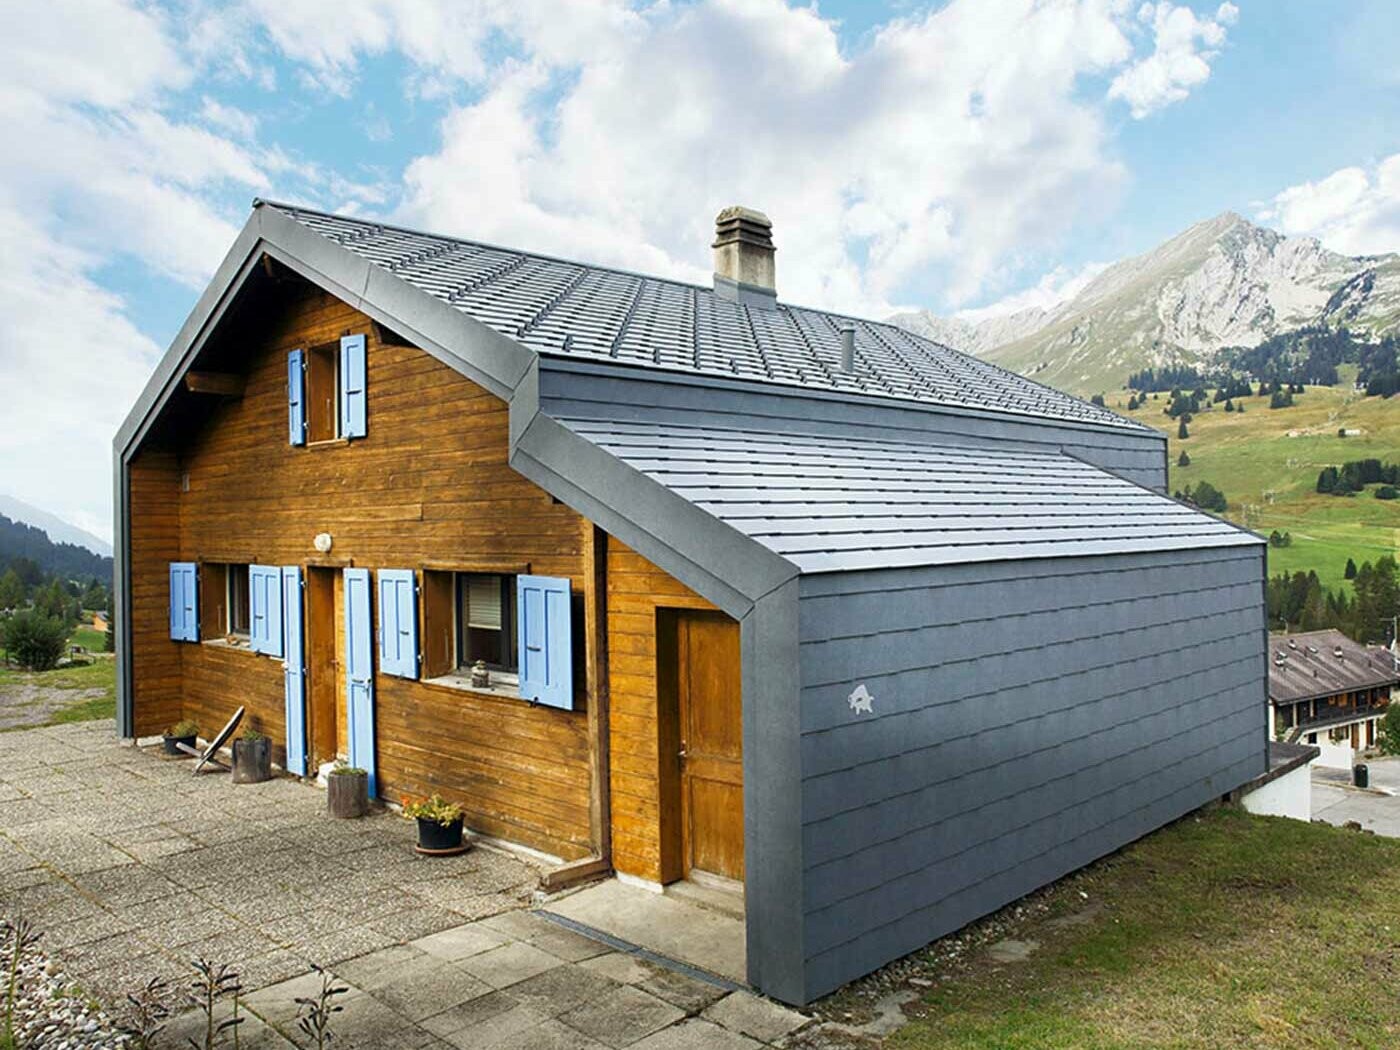 Einfamilienhaus mit der PREFA Dachschindel in Steingrau